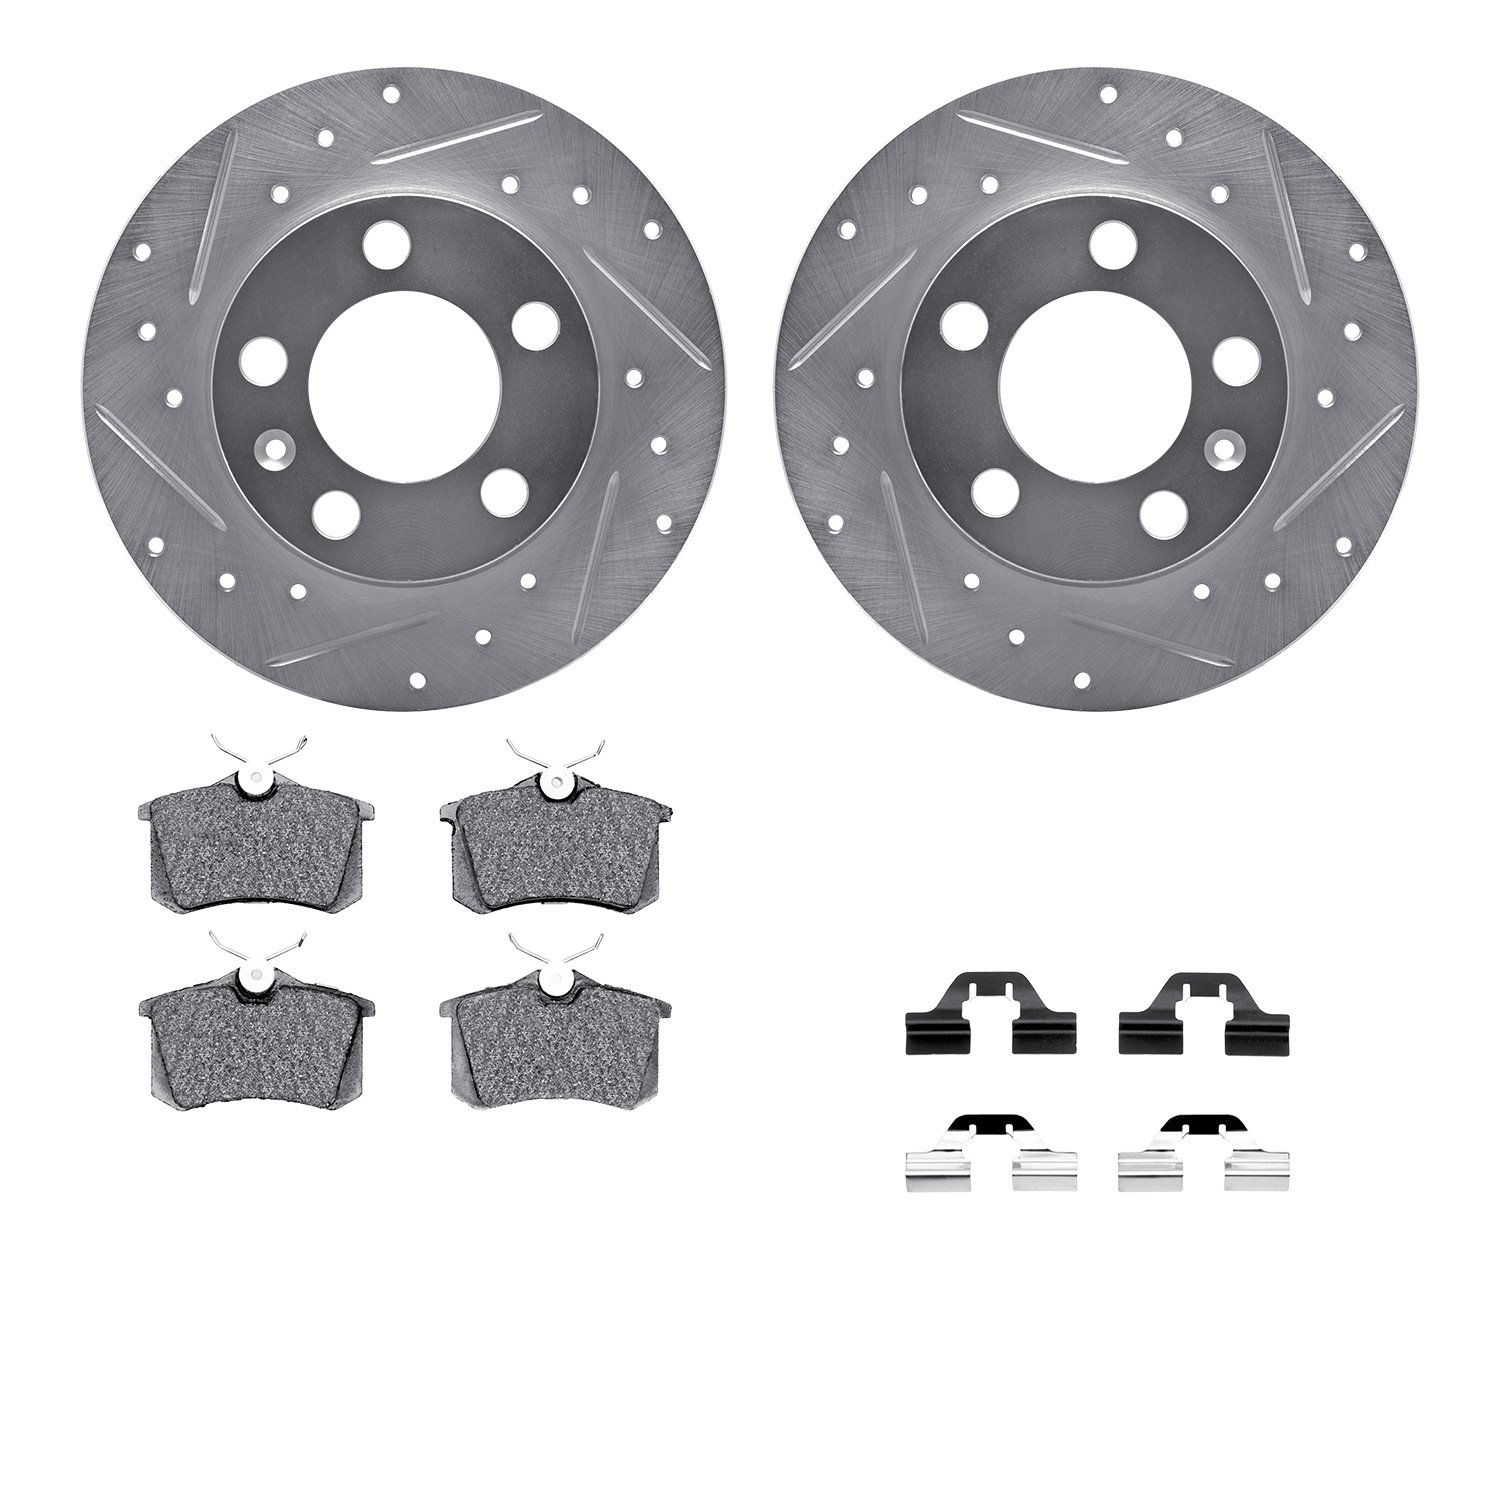 7612-74021 Drilled/Slotted Brake Rotors w/5000 Euro Ceramic Brake Pads Kit & Hardware [Silver], 1999-2015 Audi/Volkswagen, Posit